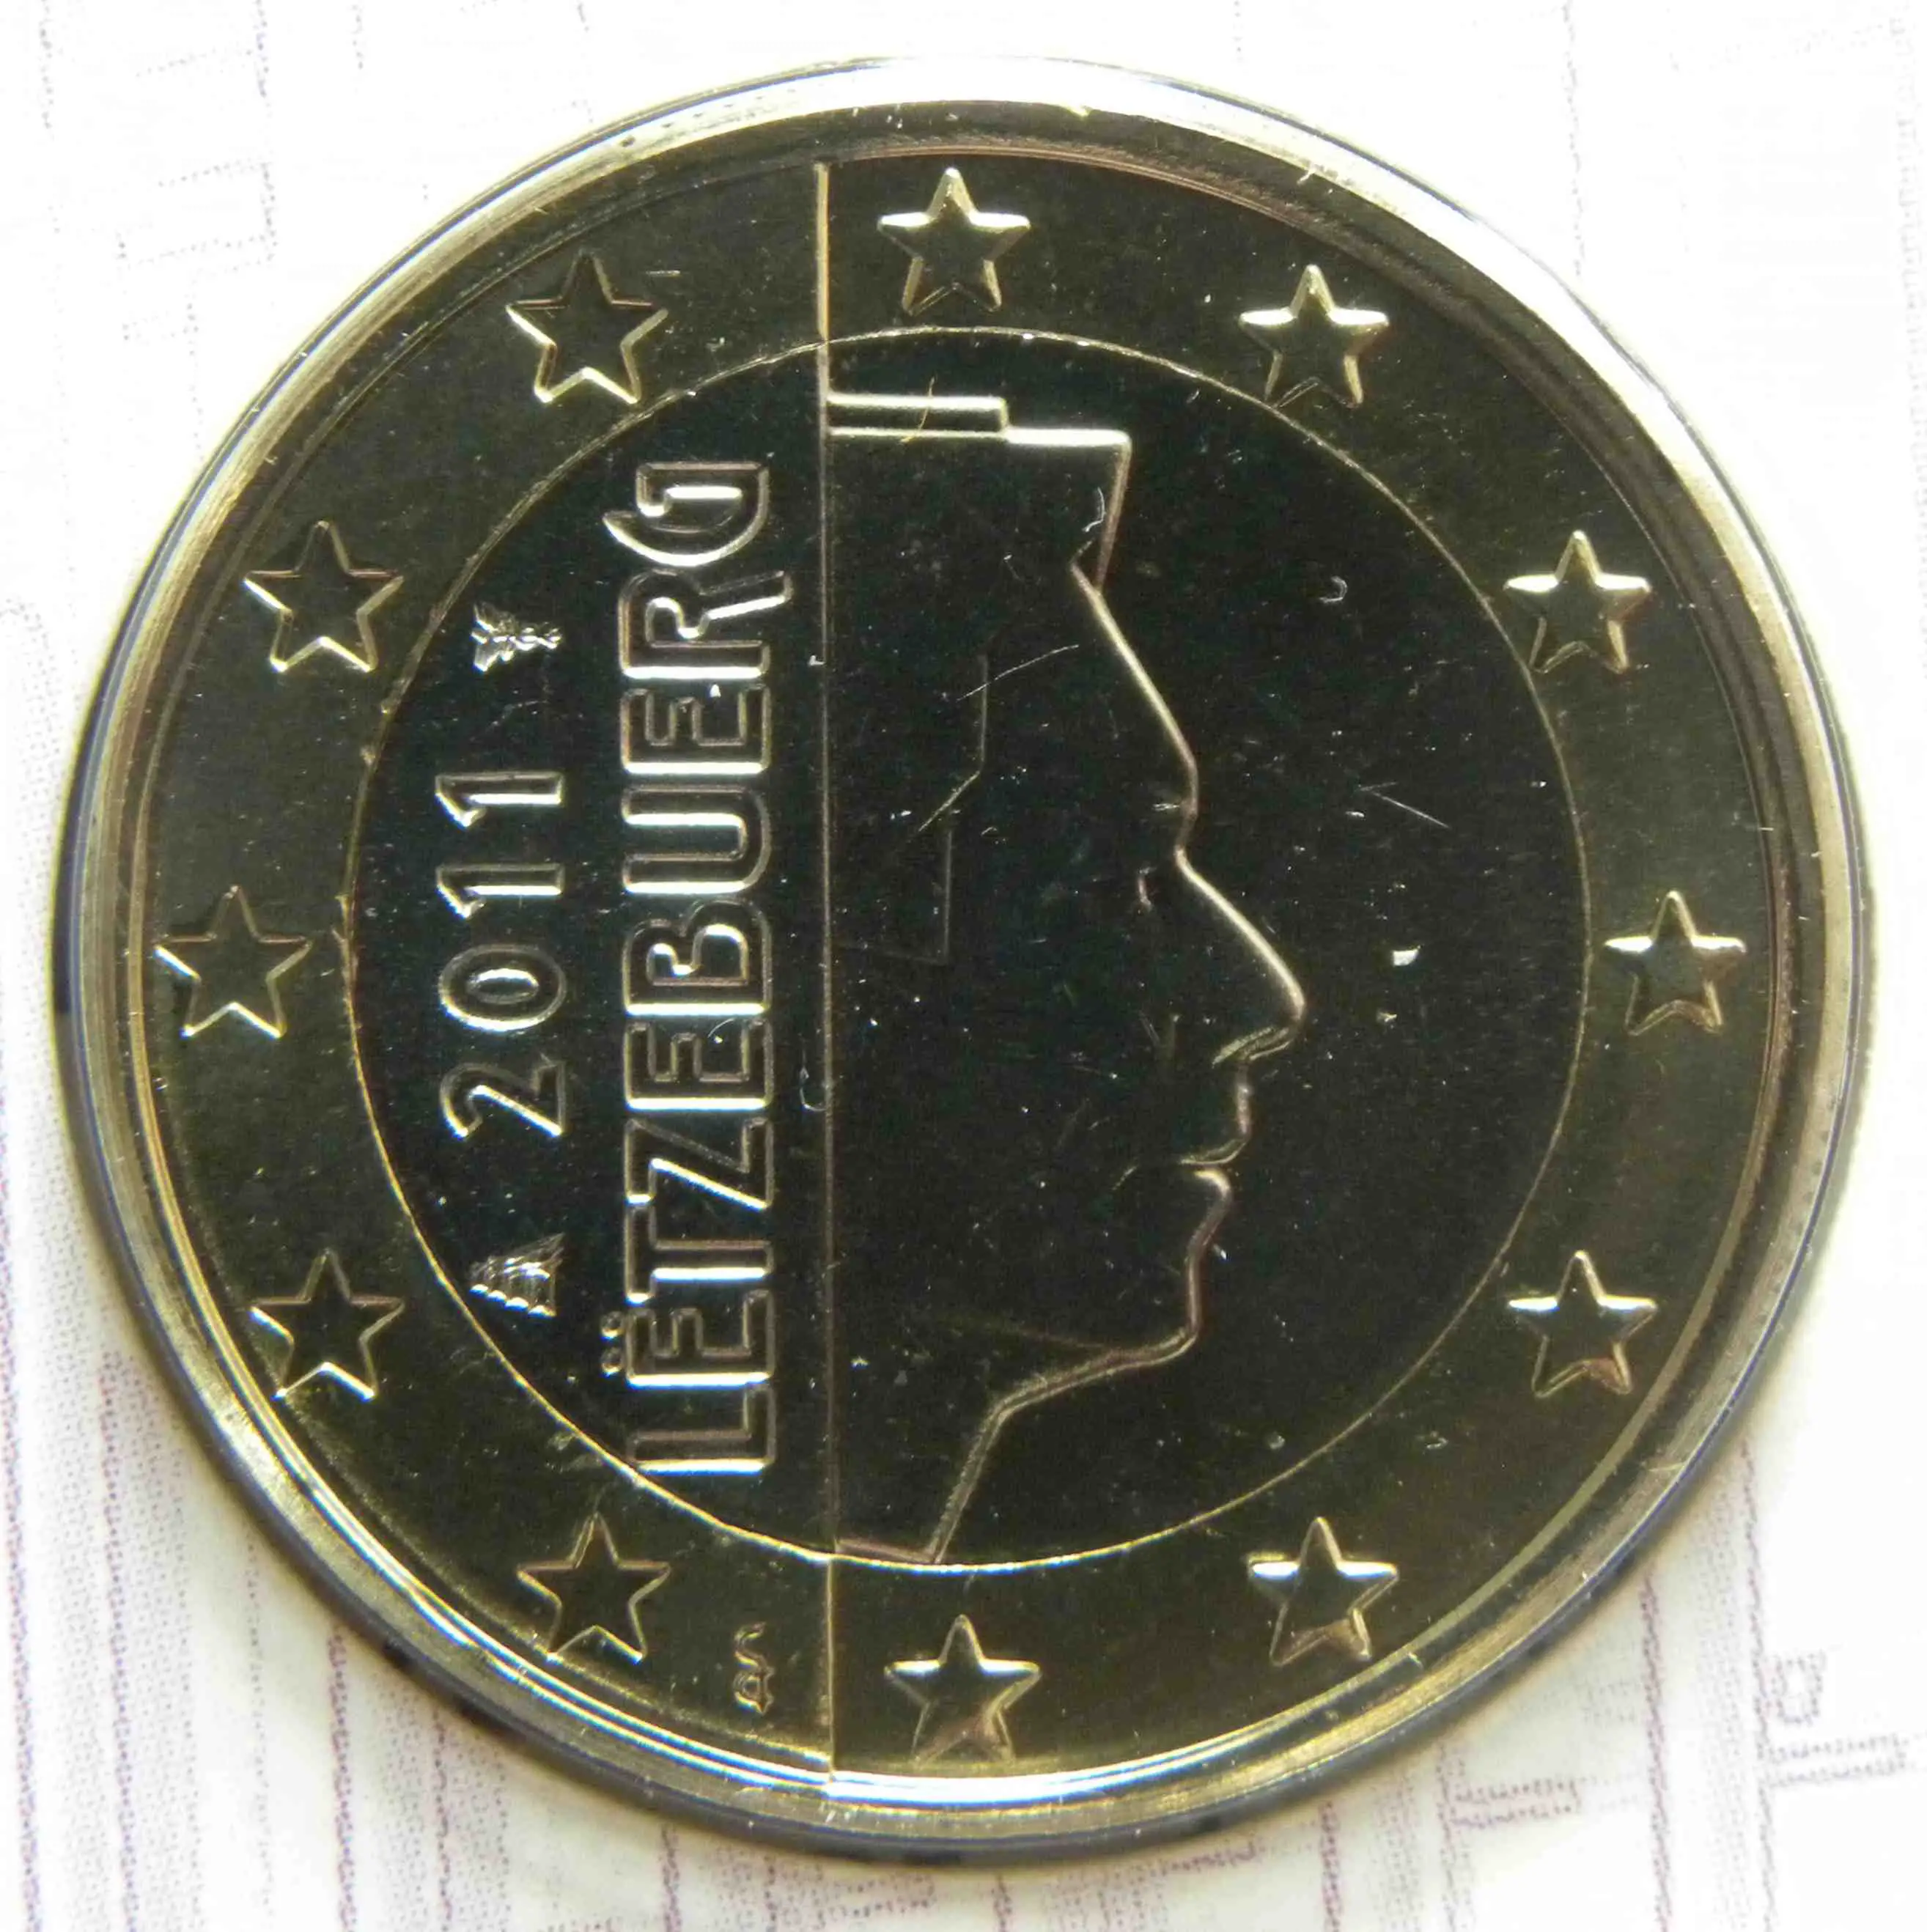 Luxemburg 1 Euro Münze 2011 - euro-muenzen.tv - Der Online Euromünzen